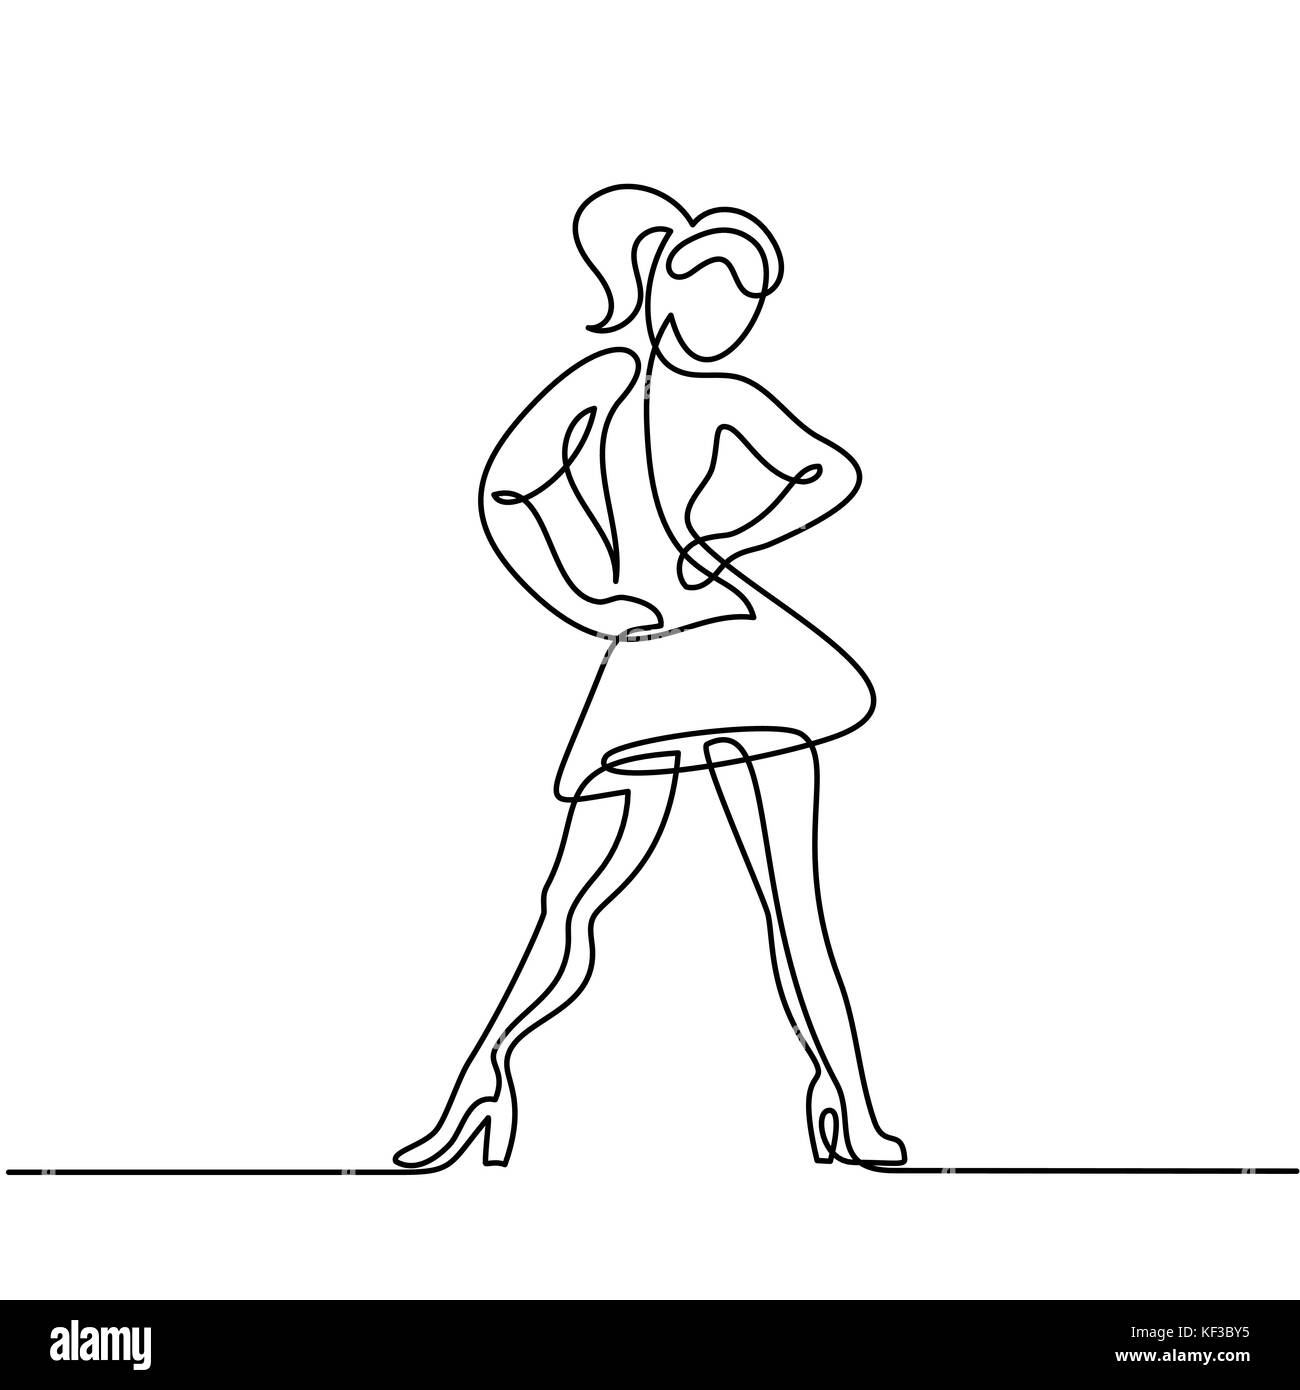 Dessin de ligne continu de femme dansant Illustration de Vecteur